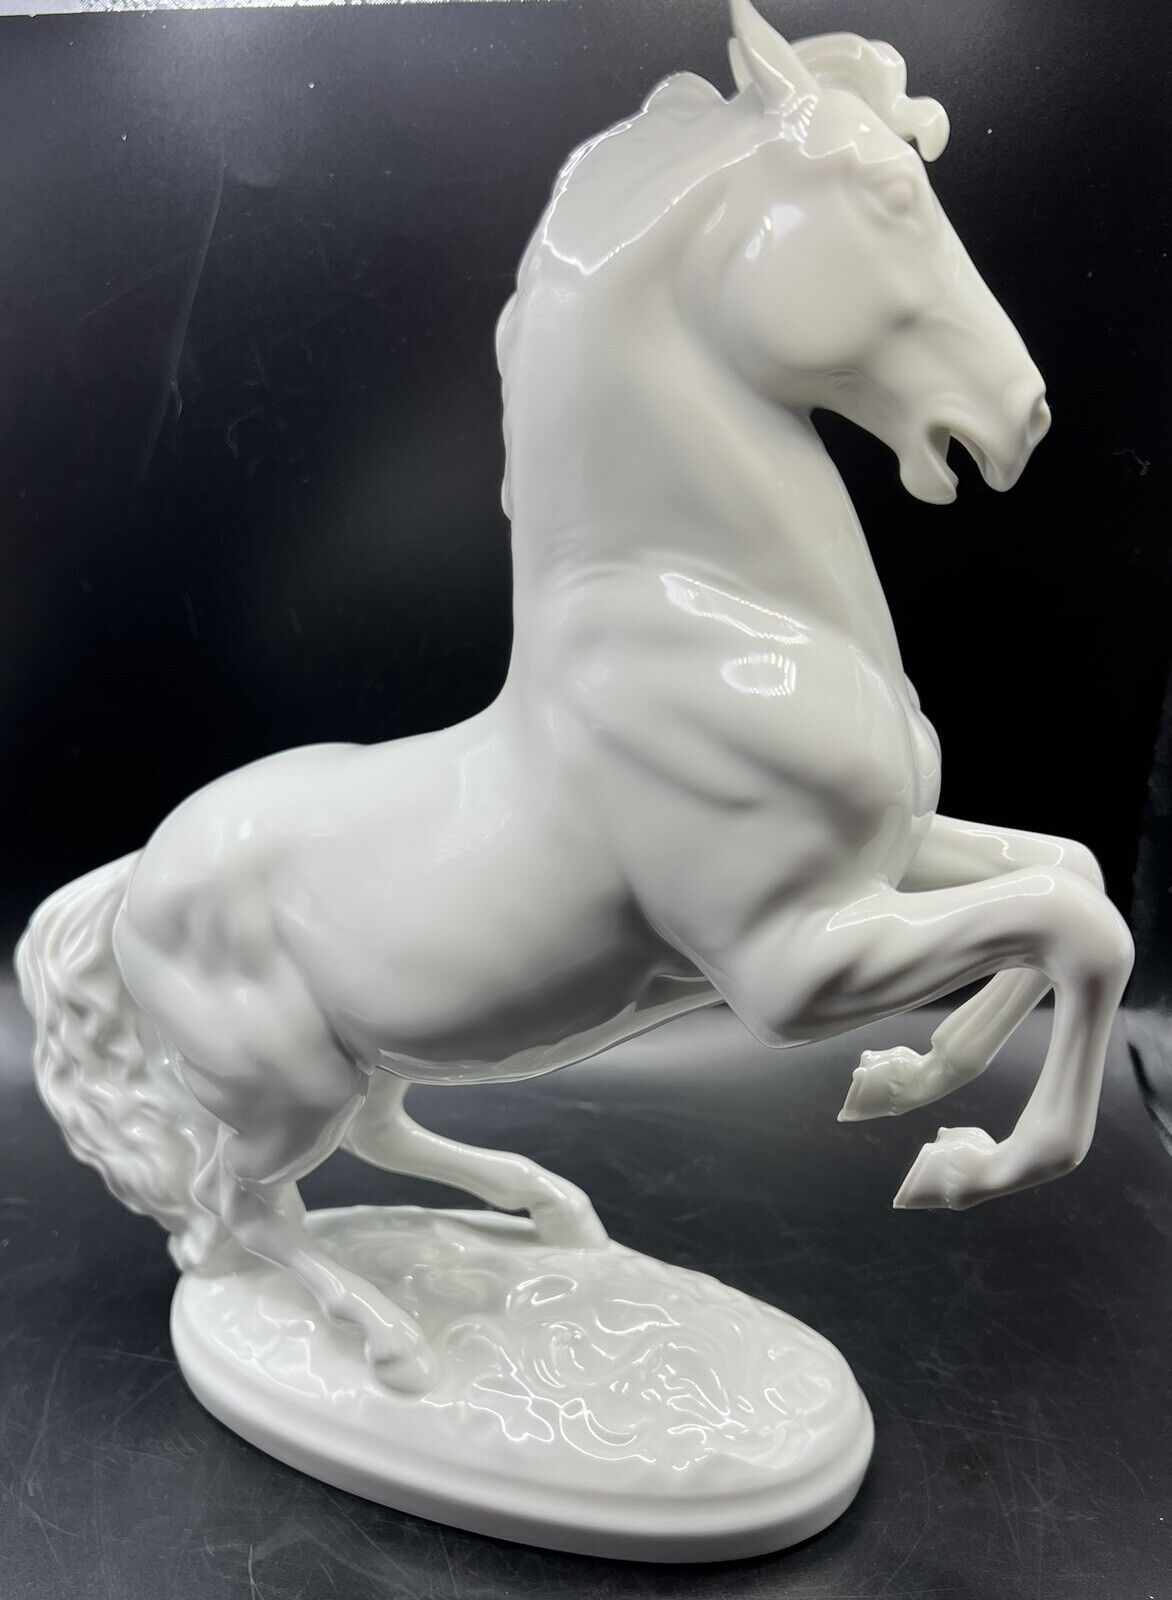 Wien Augarten Porcelain Horse Sculpture by Augarten Vienna Austria 1937